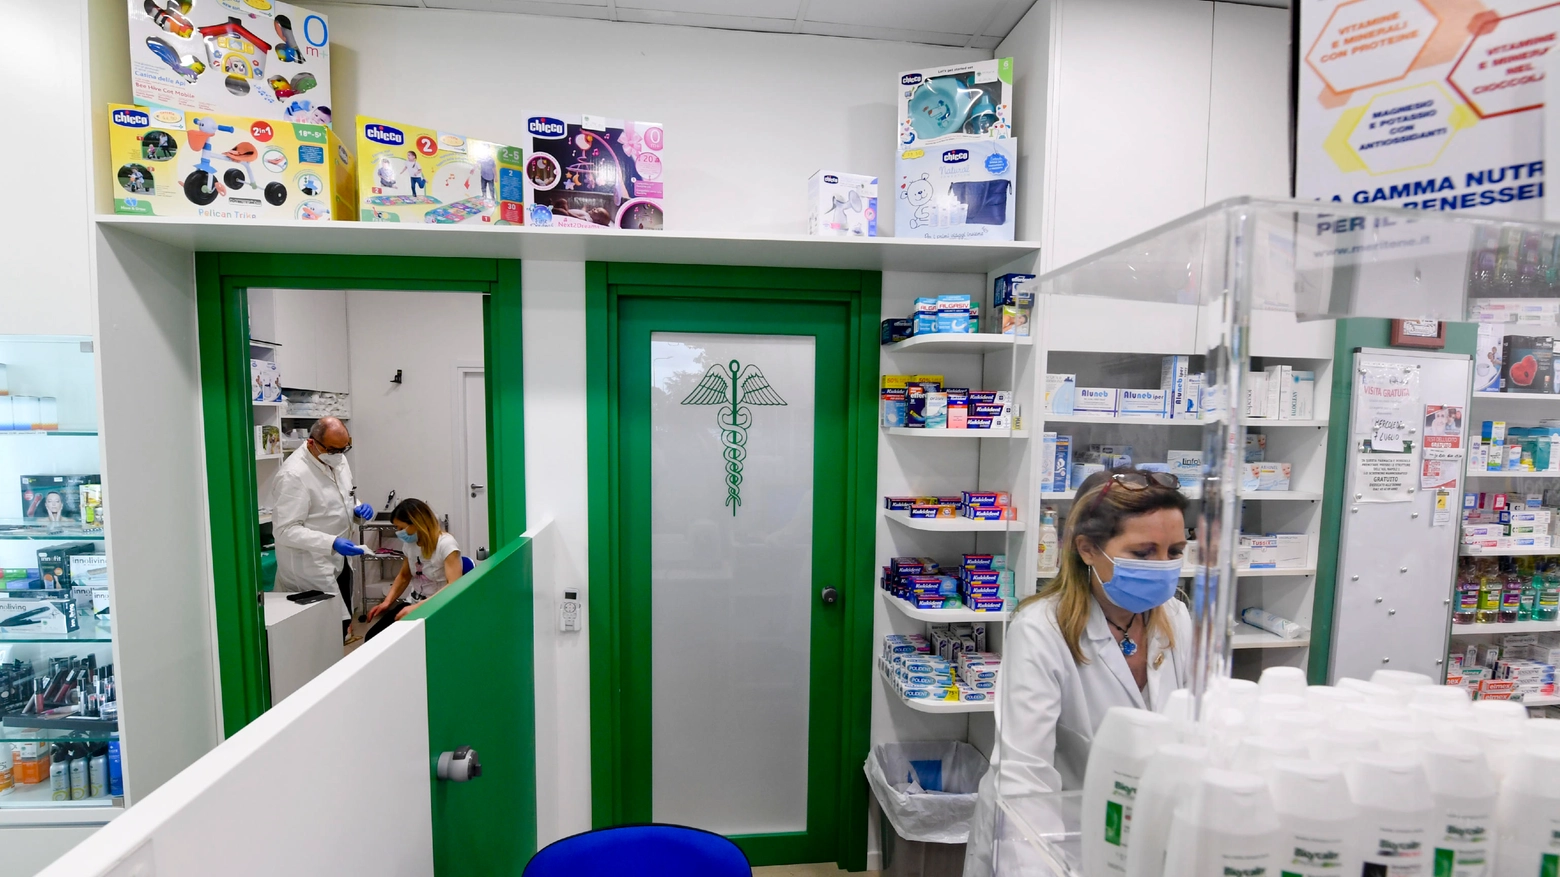 Napoli, vaccini in farmacia: partenza lenta e problemi su piattaforma